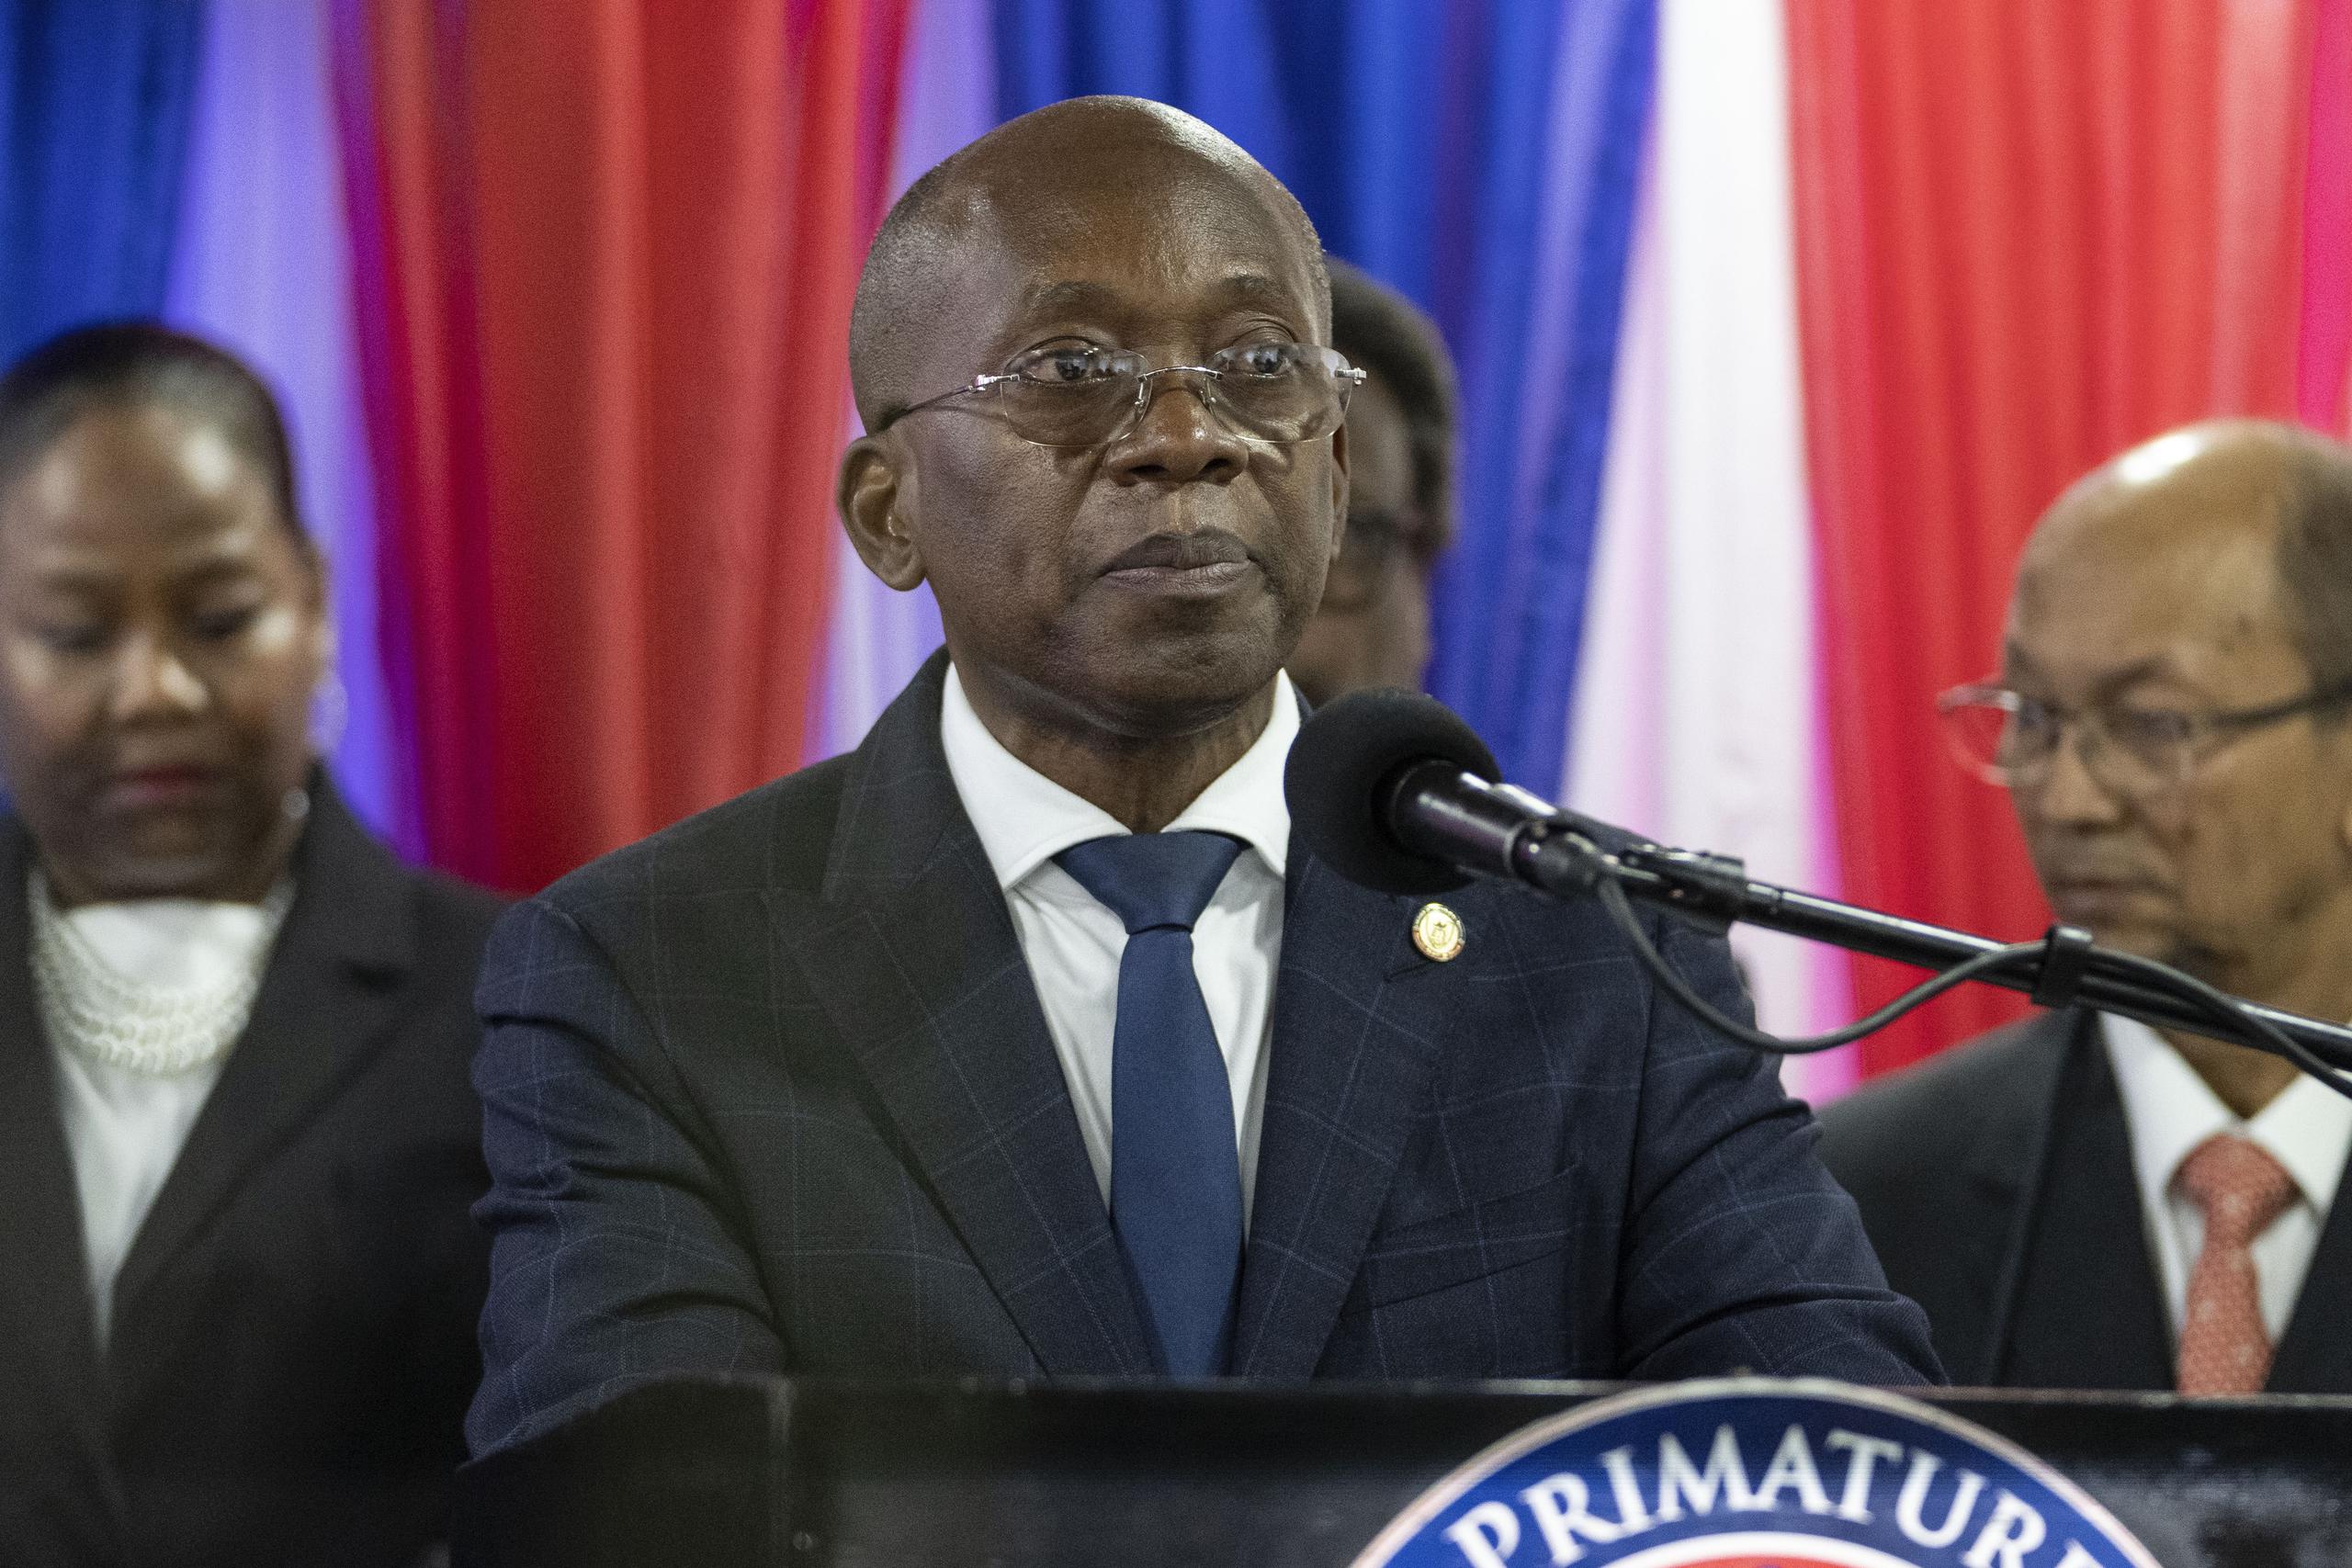 El ministro de finanzas de Haití bajo el gobierno de Ariel Henry, Michel Patrick Boisvert, fue elegido como primer ministro interino por los restantes miembros del gabinete.